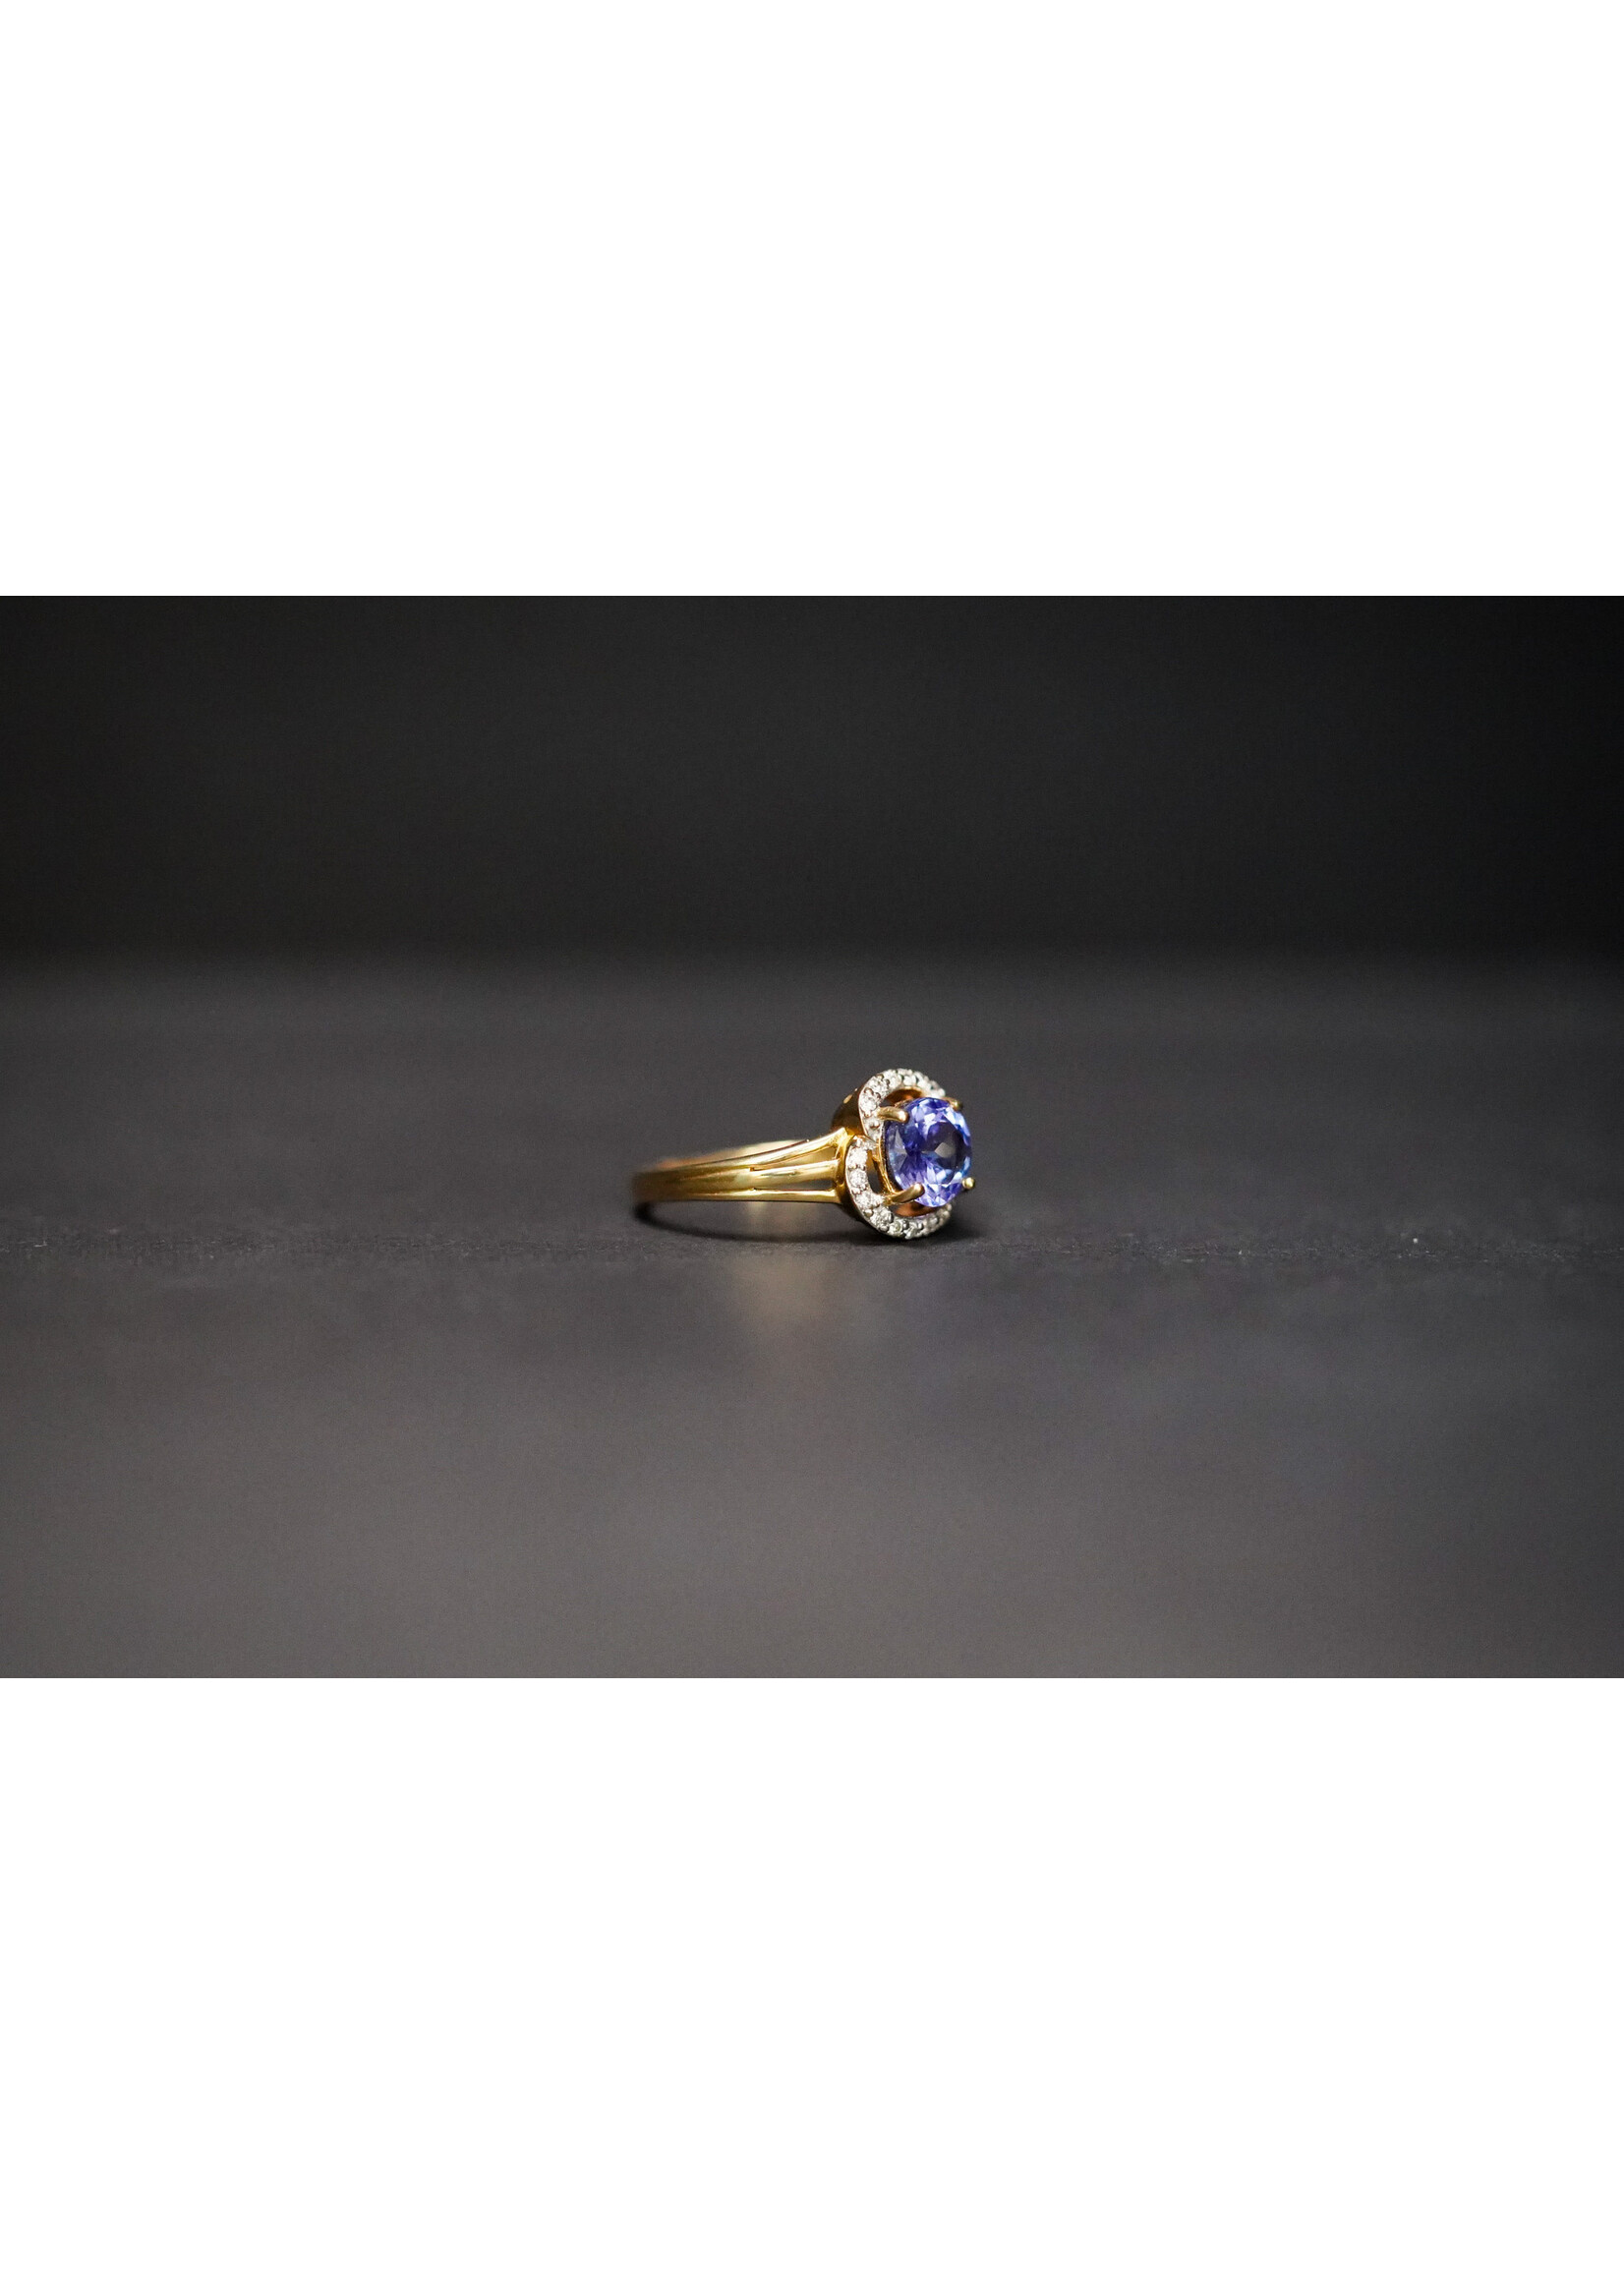 18KY 3.7g 1.37ctw (1.17ctr) Tanzanite & Diamond Halo Ring (size 7)